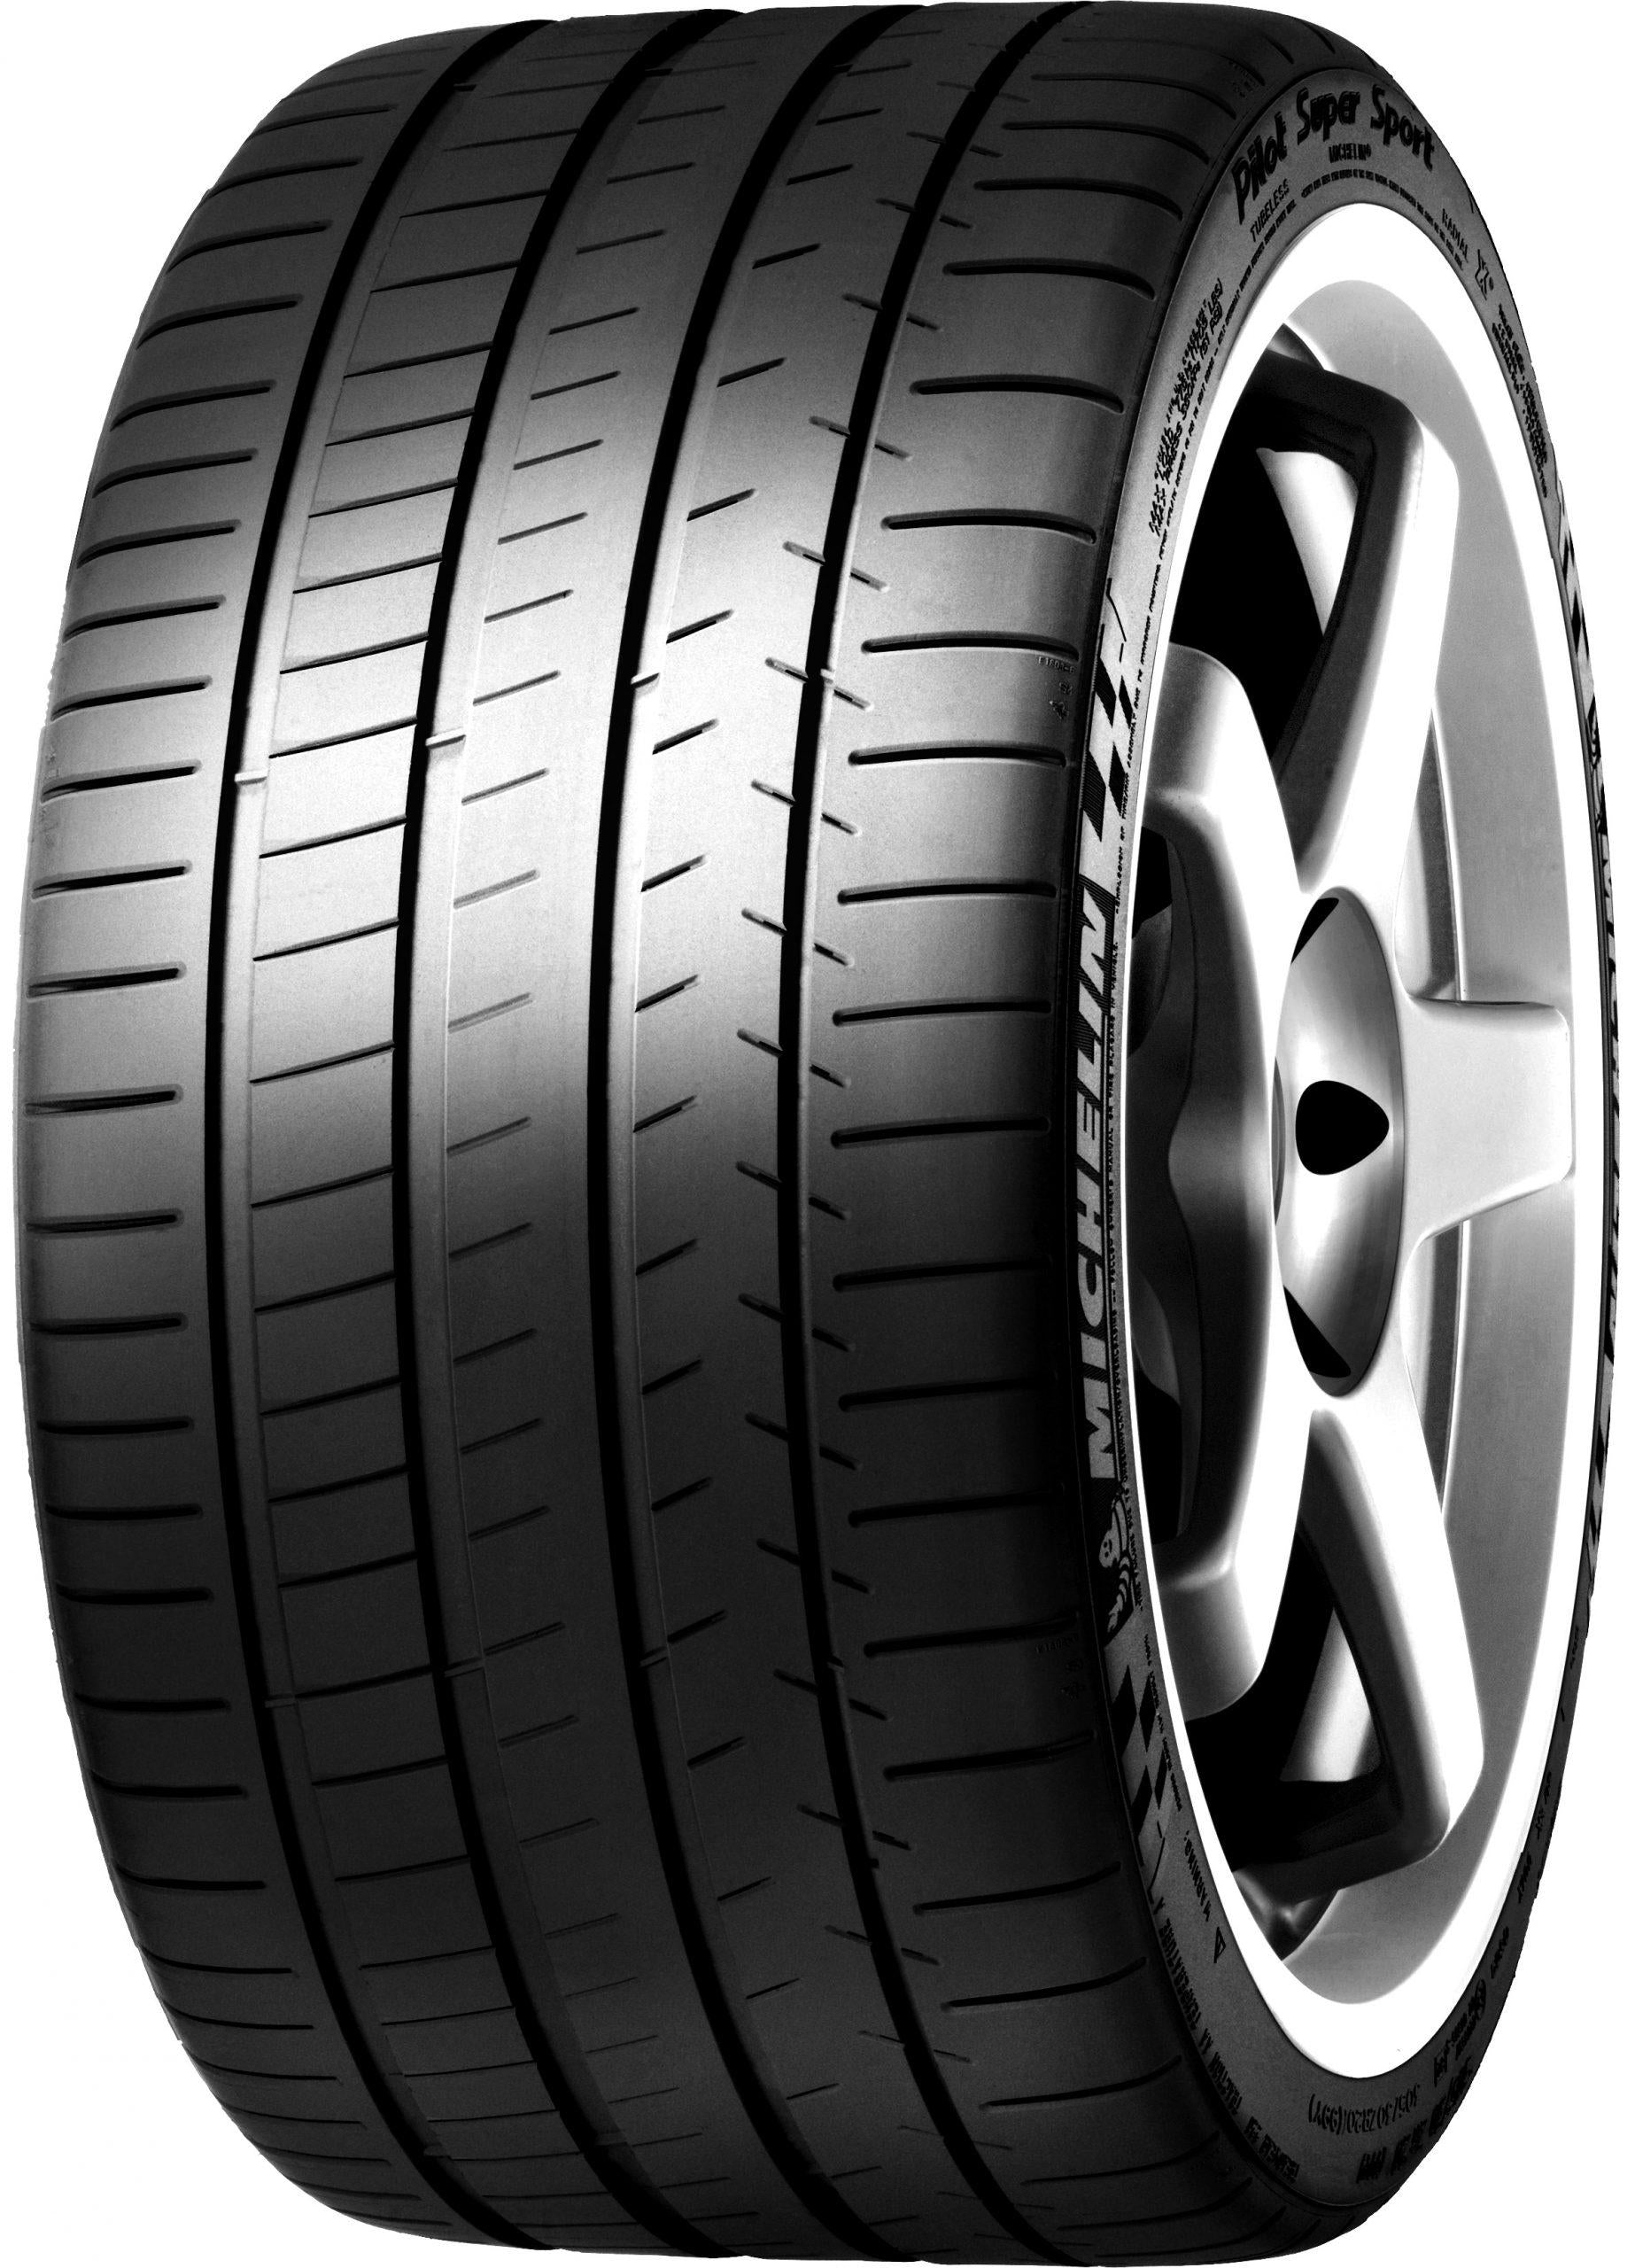 Neumáticos Michelin 255/40 ZR20 PILOT SUPER SPORT N0 (101/Y)